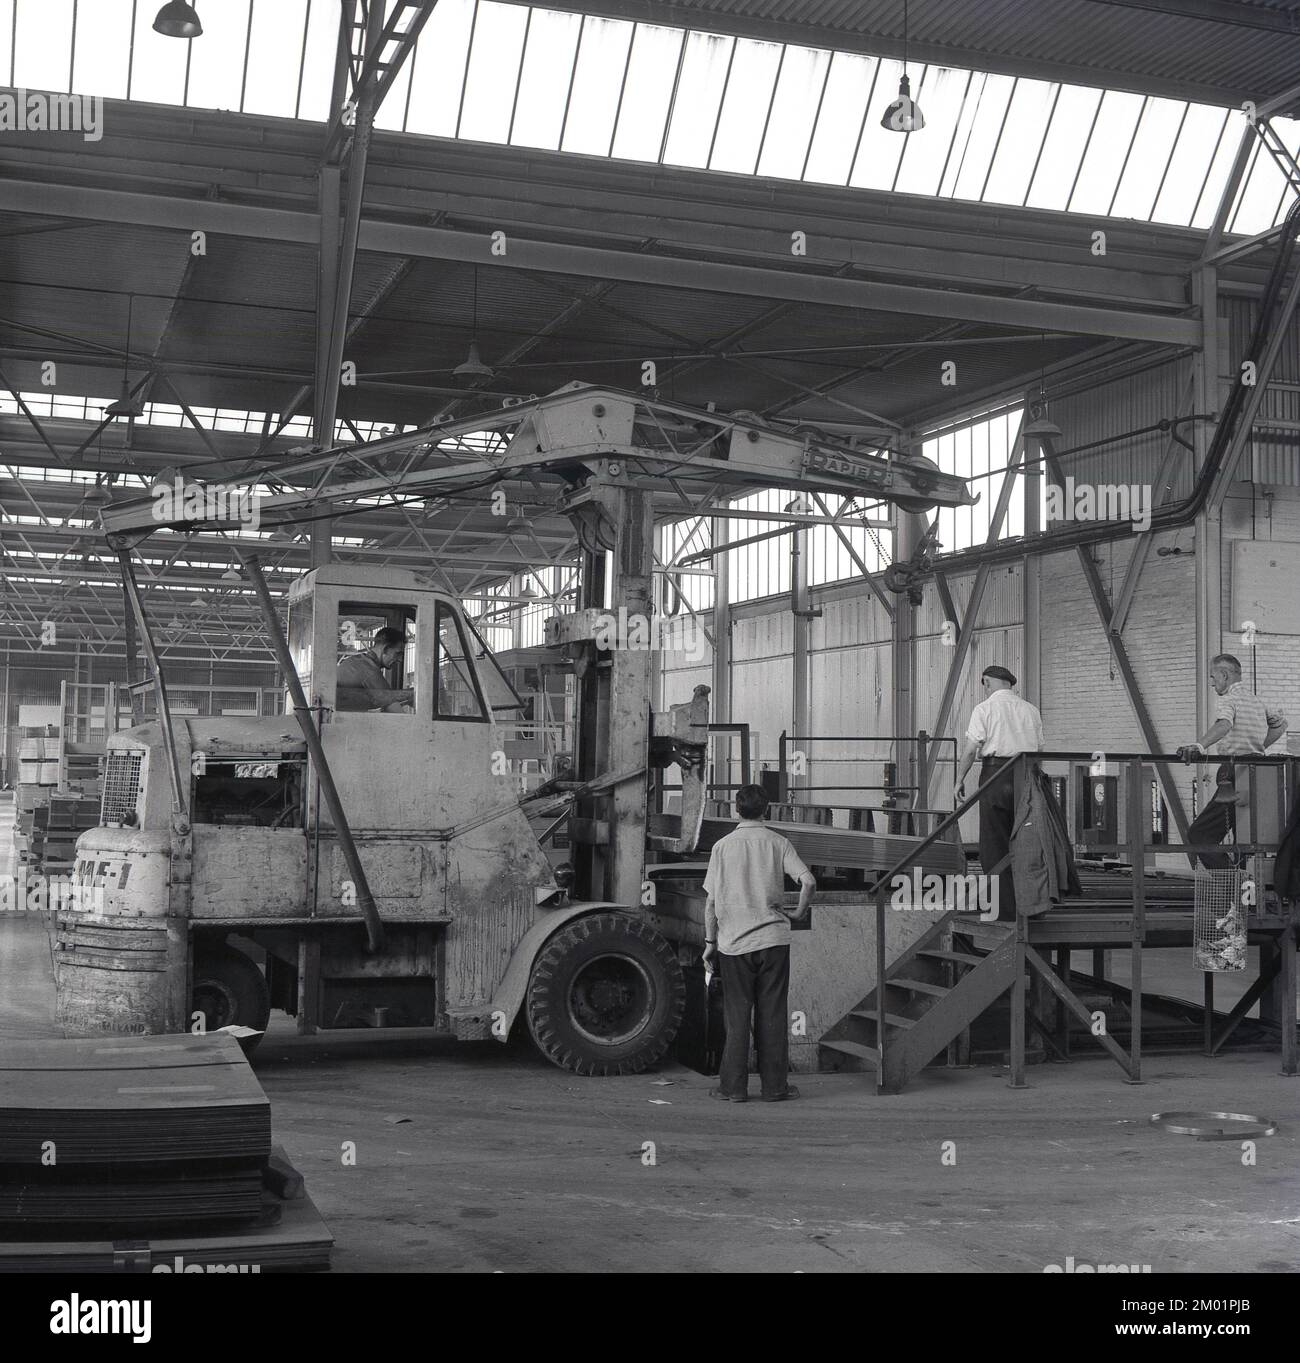 1950s, historique, steelworks, une grue de levage à rapier électrique (EME-1) de levage de la pile de tôles d'acier à l'Abbey Works, Port Talbot, pays de Galles du Sud, Royaume-Uni. La grue mobile a été fabriquée à Ipswich, dans le Suffolk, en Angleterre, par Ransomes & Rapier, l'un des principaux fabricants britanniques d'équipements et de machines ferroviaires pour travaux lourds, une entreprise qui remonte à 1869, et qui a finalement fermé plus de 100 ans plus tard en 1987. Banque D'Images